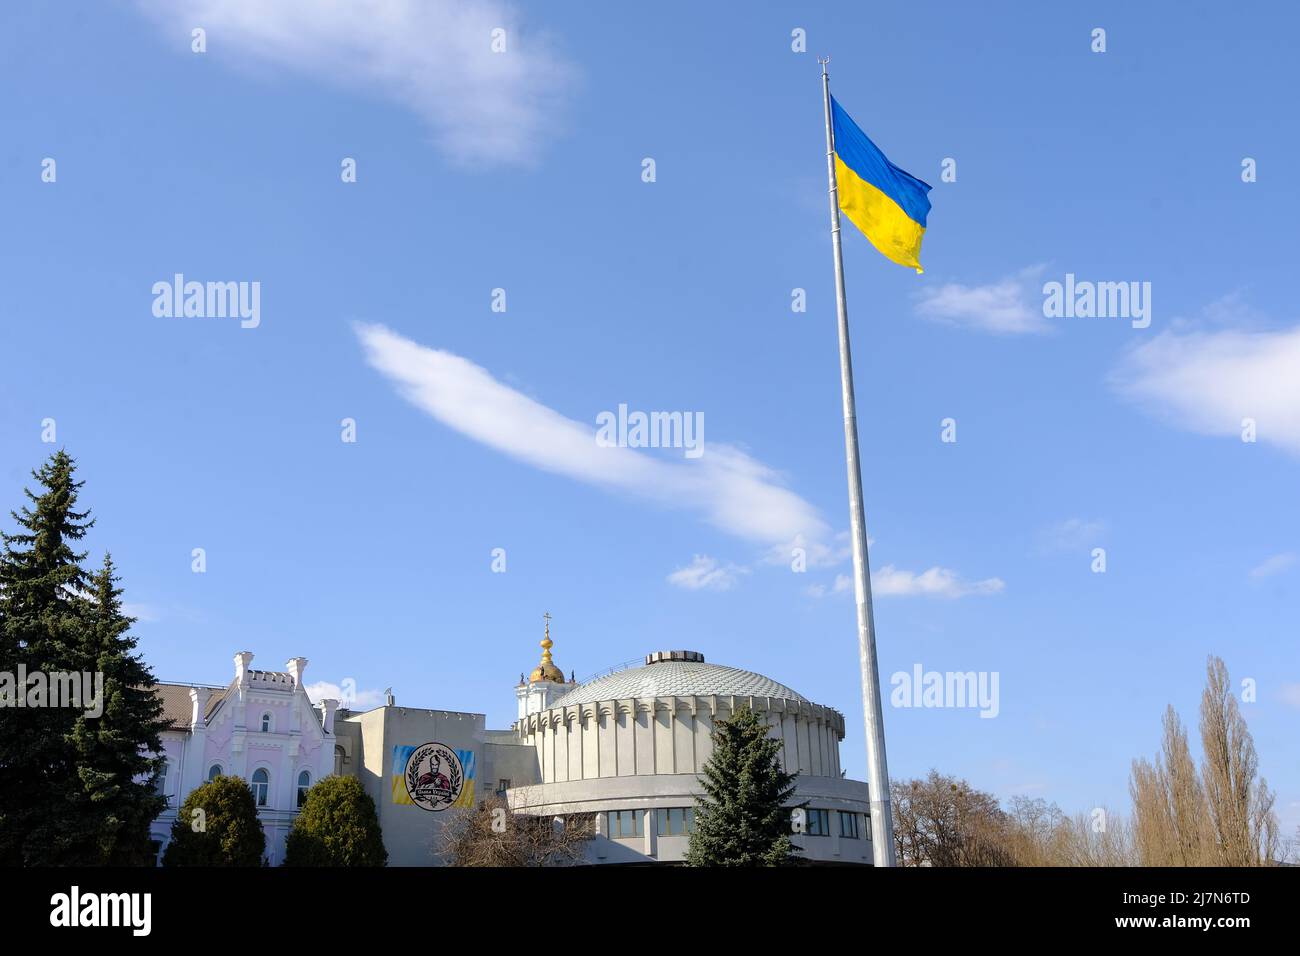 Sumy, Ukraine - 05. April 2022: Schönes Stadtbild in der Nähe des Sadko-Brunnens und der flad of Ukraine Stockfoto